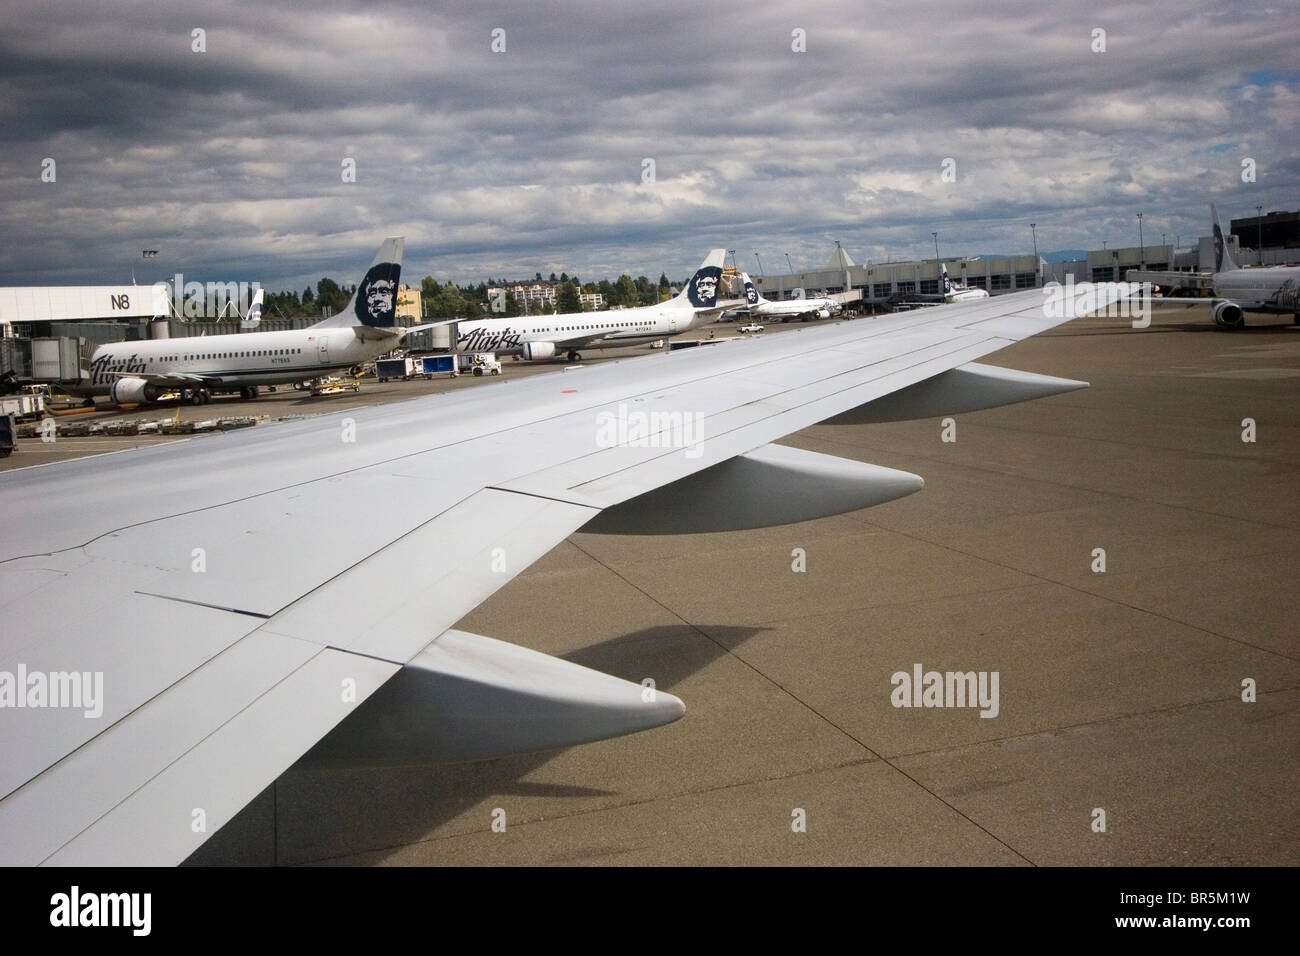 Tarmac de l'aéroport, tablier, avec plusieurs avions d'Alaska Airlines au-dessus de l'aile d'avion, un autre avion Seattle Washington Banque D'Images